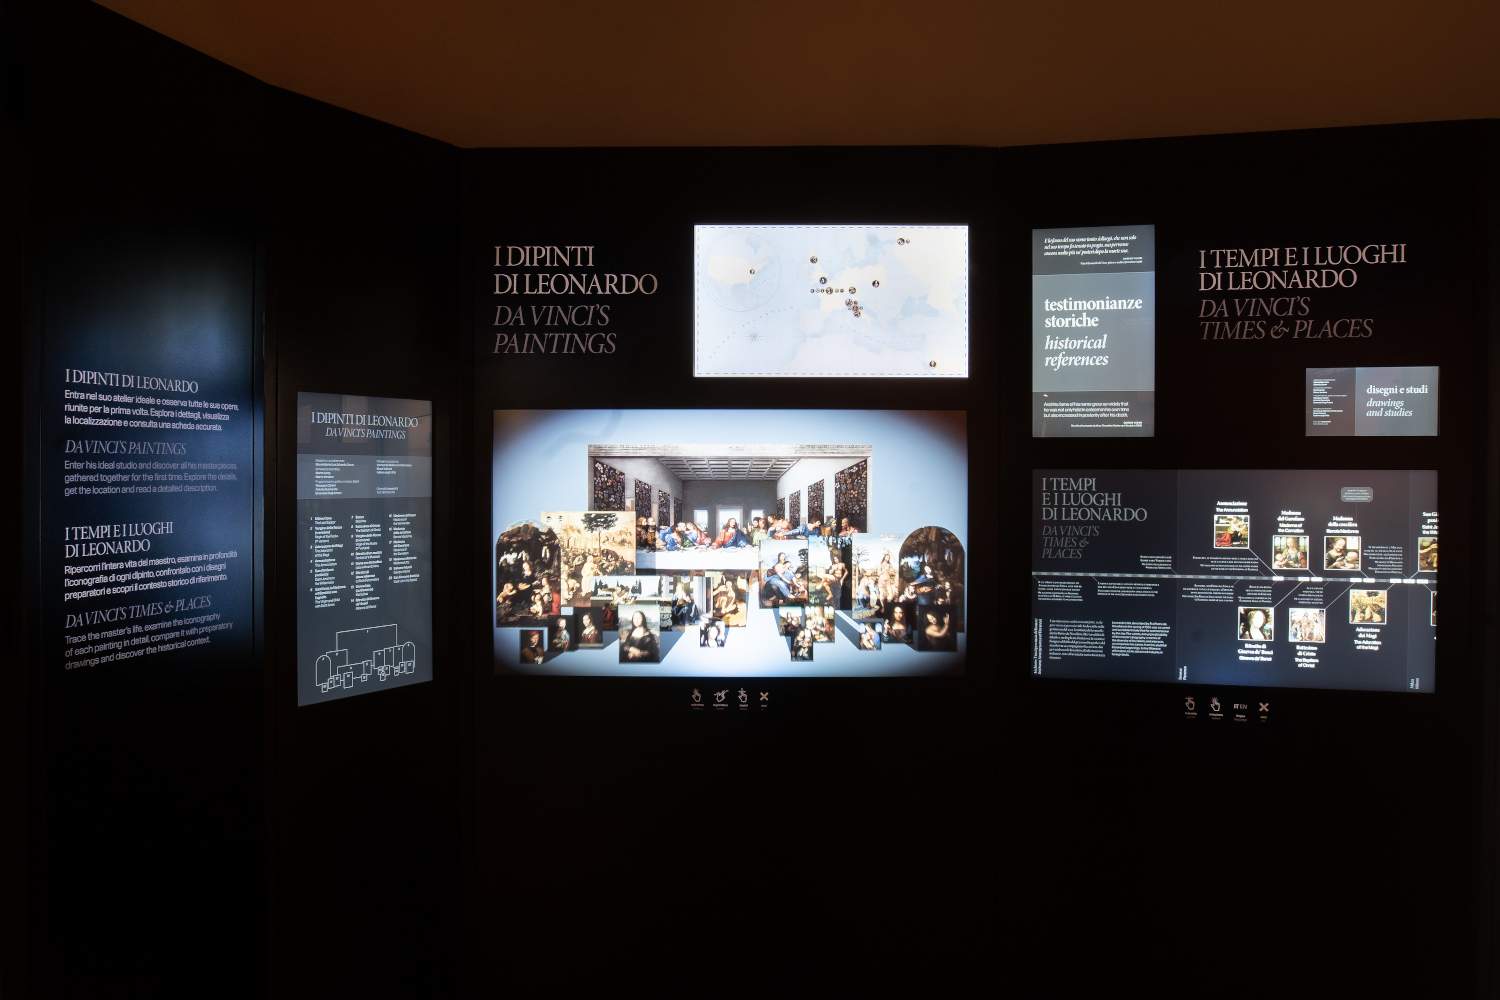 Au musée Leonardo3, un mur interactif inédit rassemble vingt tableaux de Léonard de Vinci. 